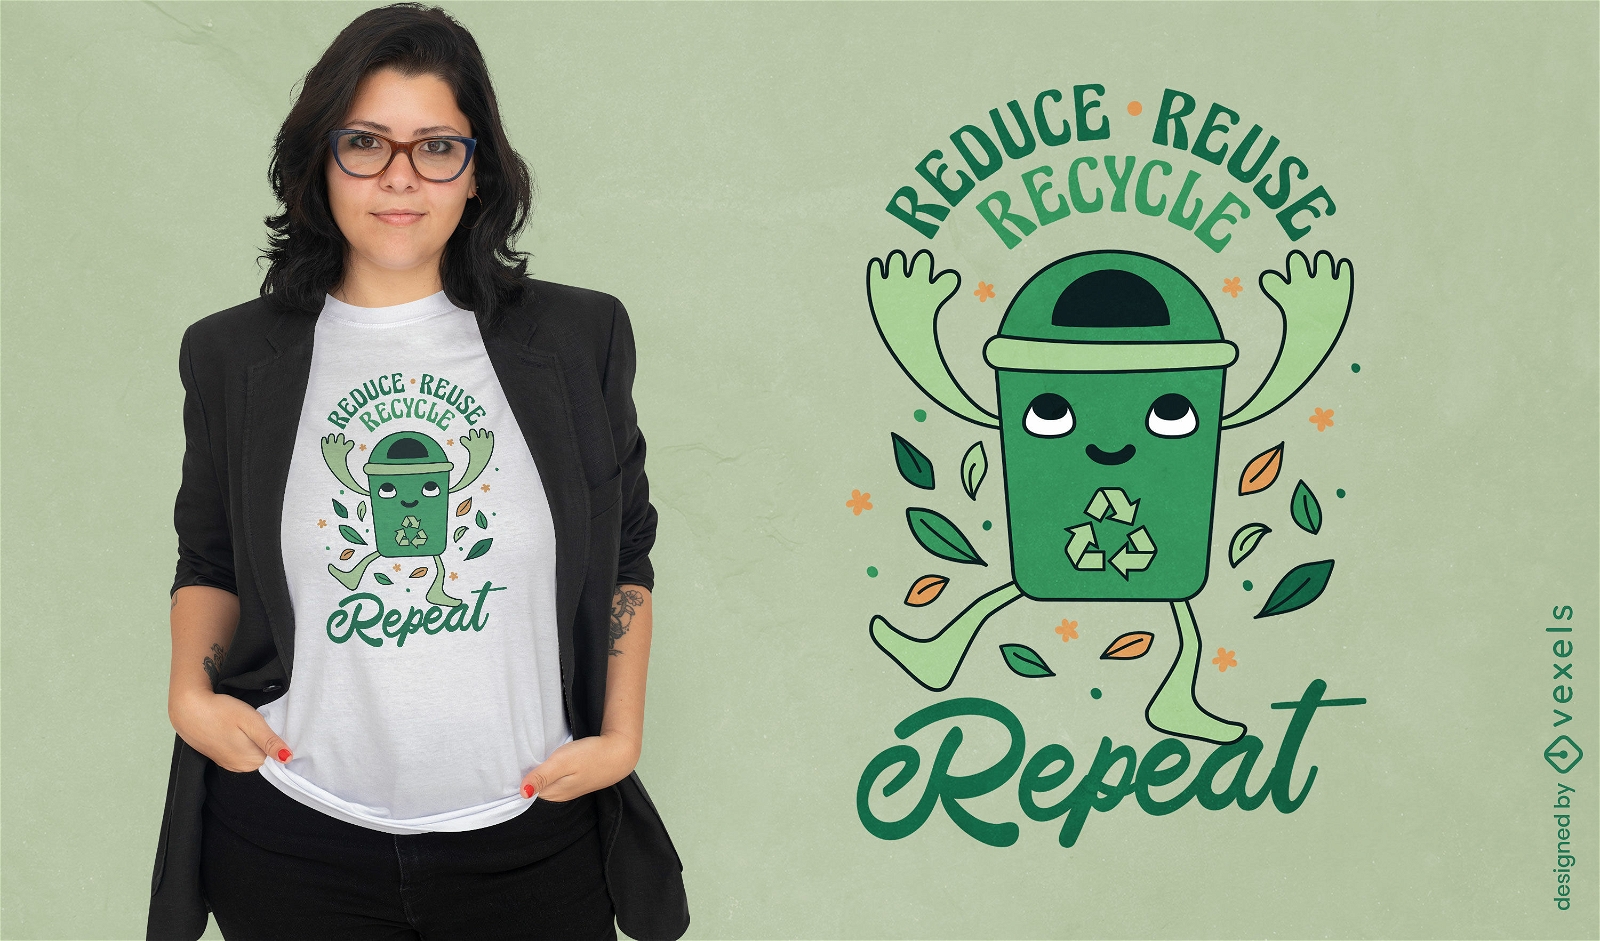 Reducir reutilizar reciclar dise?o de camiseta.